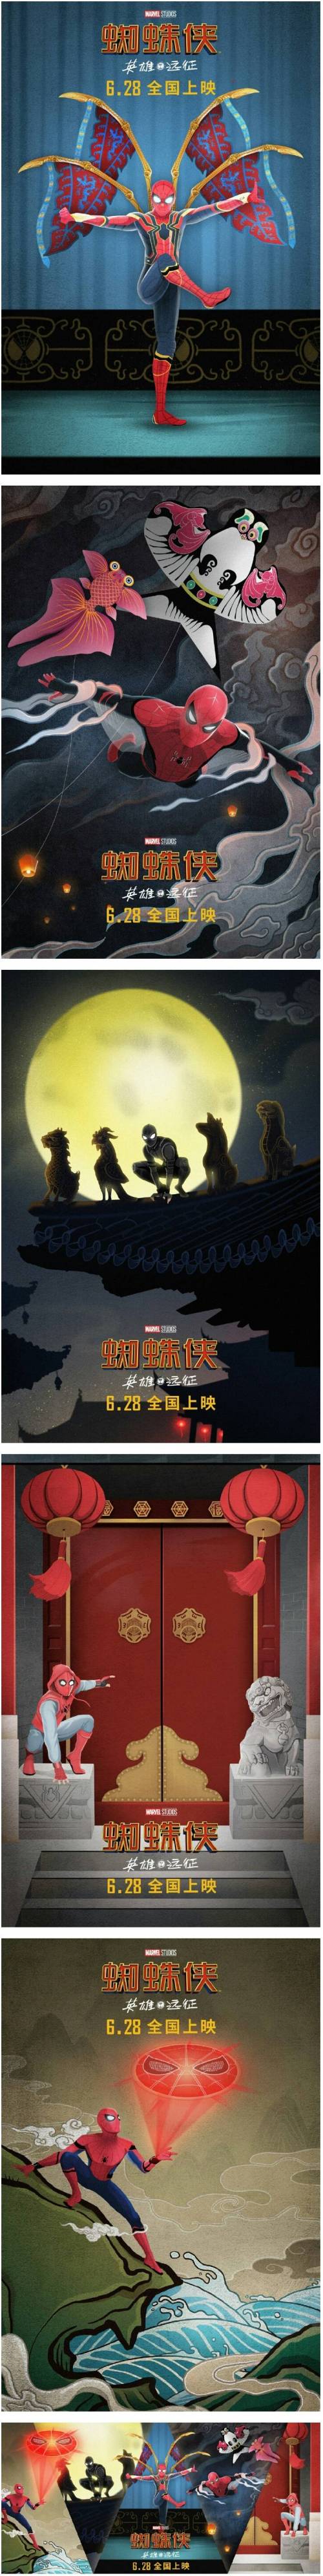 스파이더맨 파프롬홈 중국 포스터.jpg